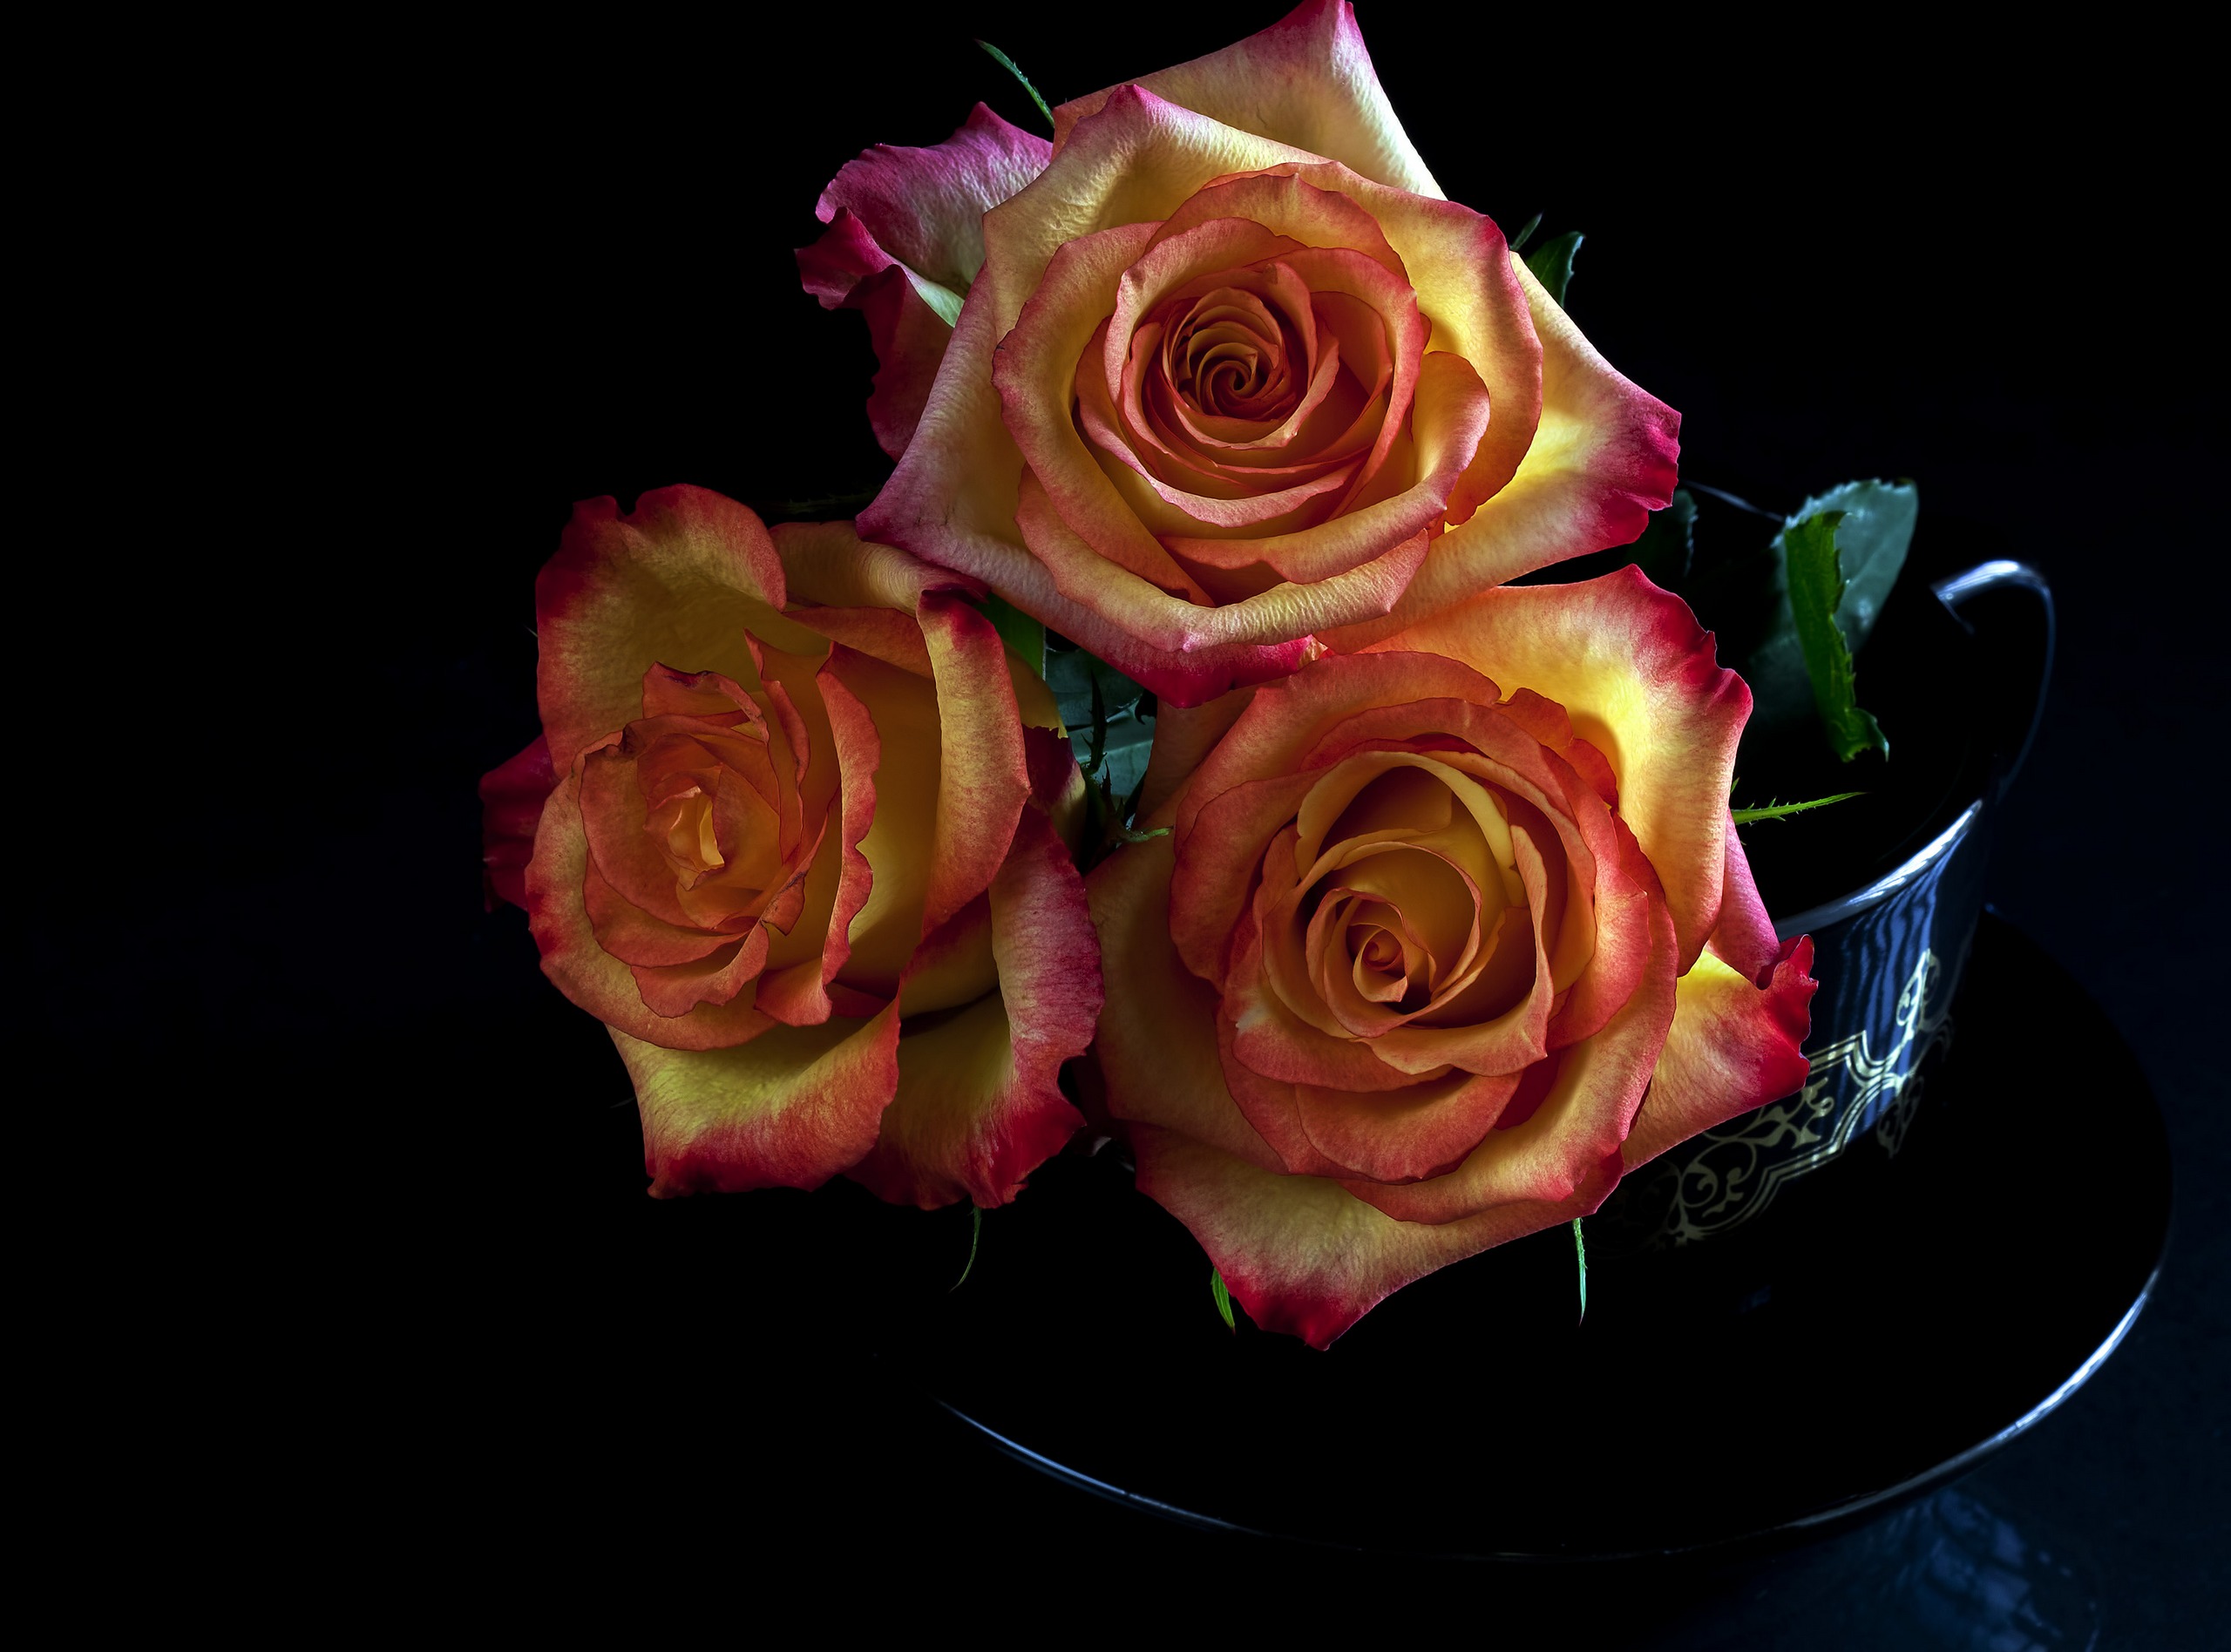 Скачать обои бесплатно Цветок, Роза, Сделано Человеком картинка на рабочий стол ПК